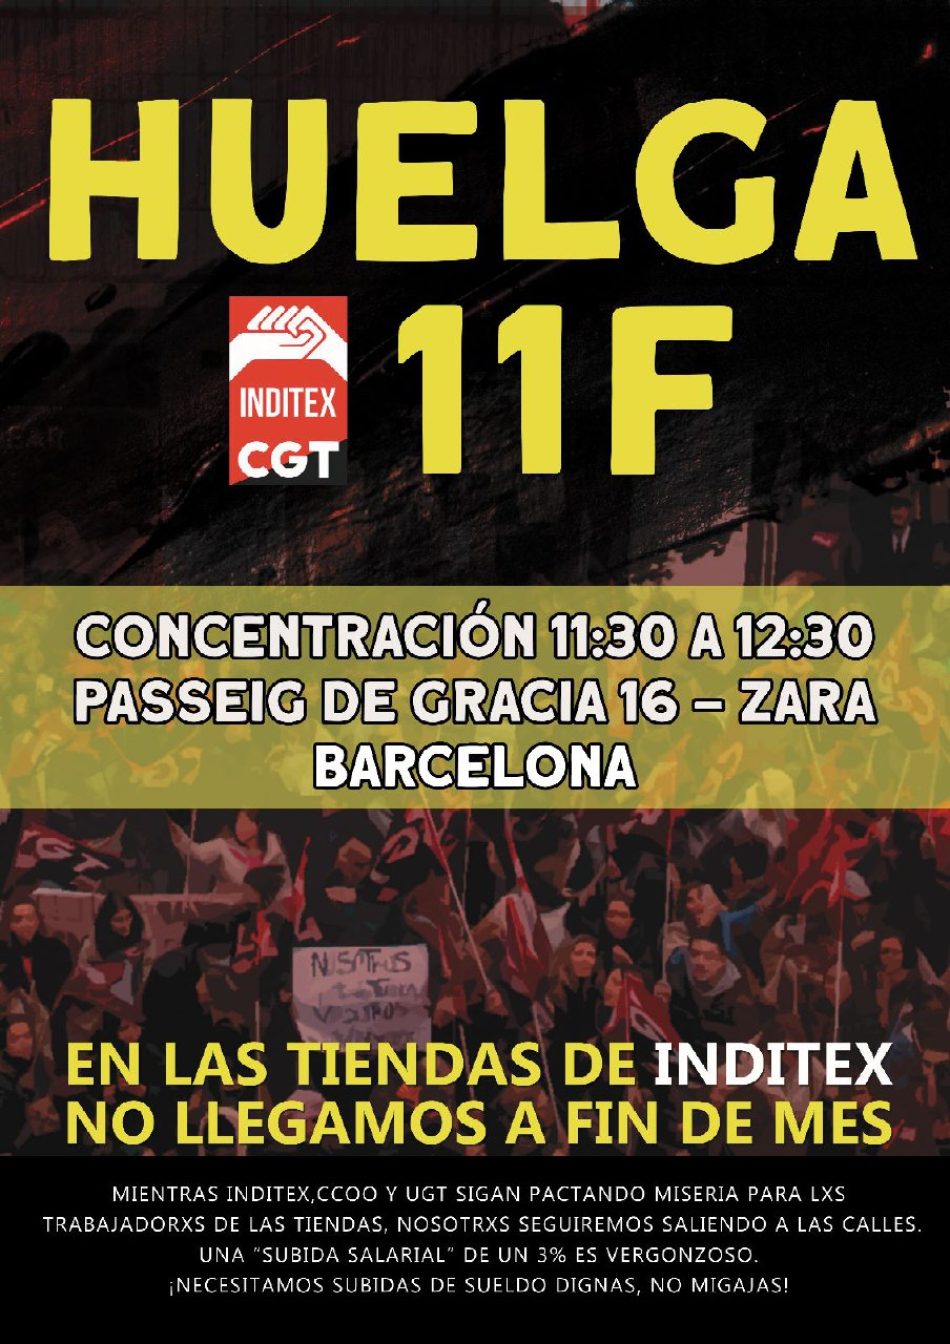 Huelga y concentración contra Inditex (Zara y Pull&Bear) en Barcelona el 11 marzo